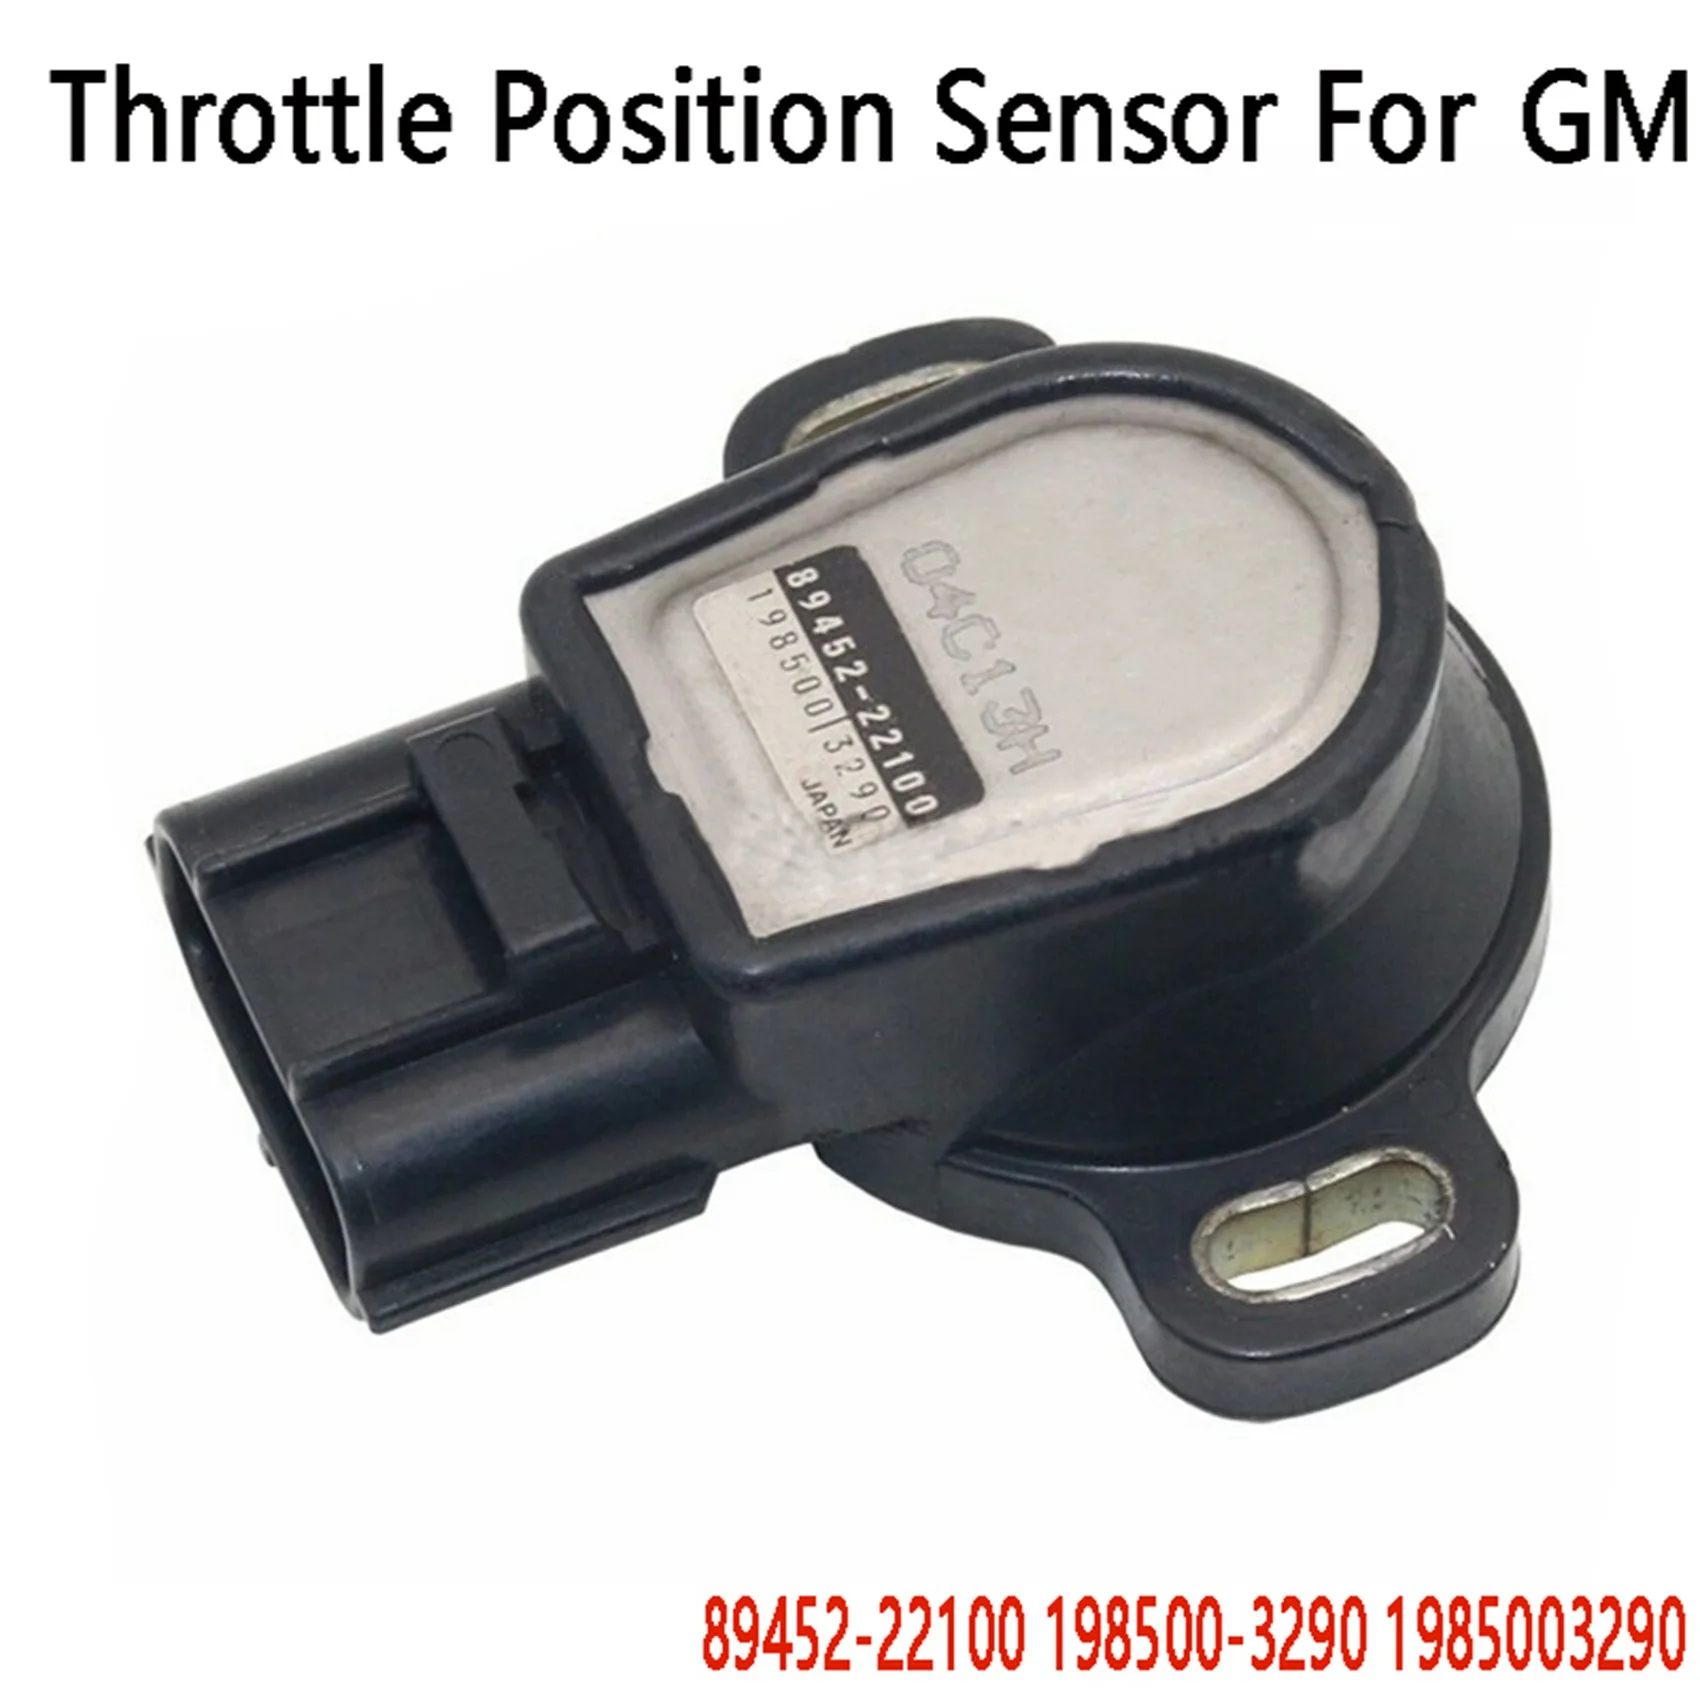 

Throttle Position Sensor TPS Sensor for Toyota GM 89452-22100 198500-3290 1985003290